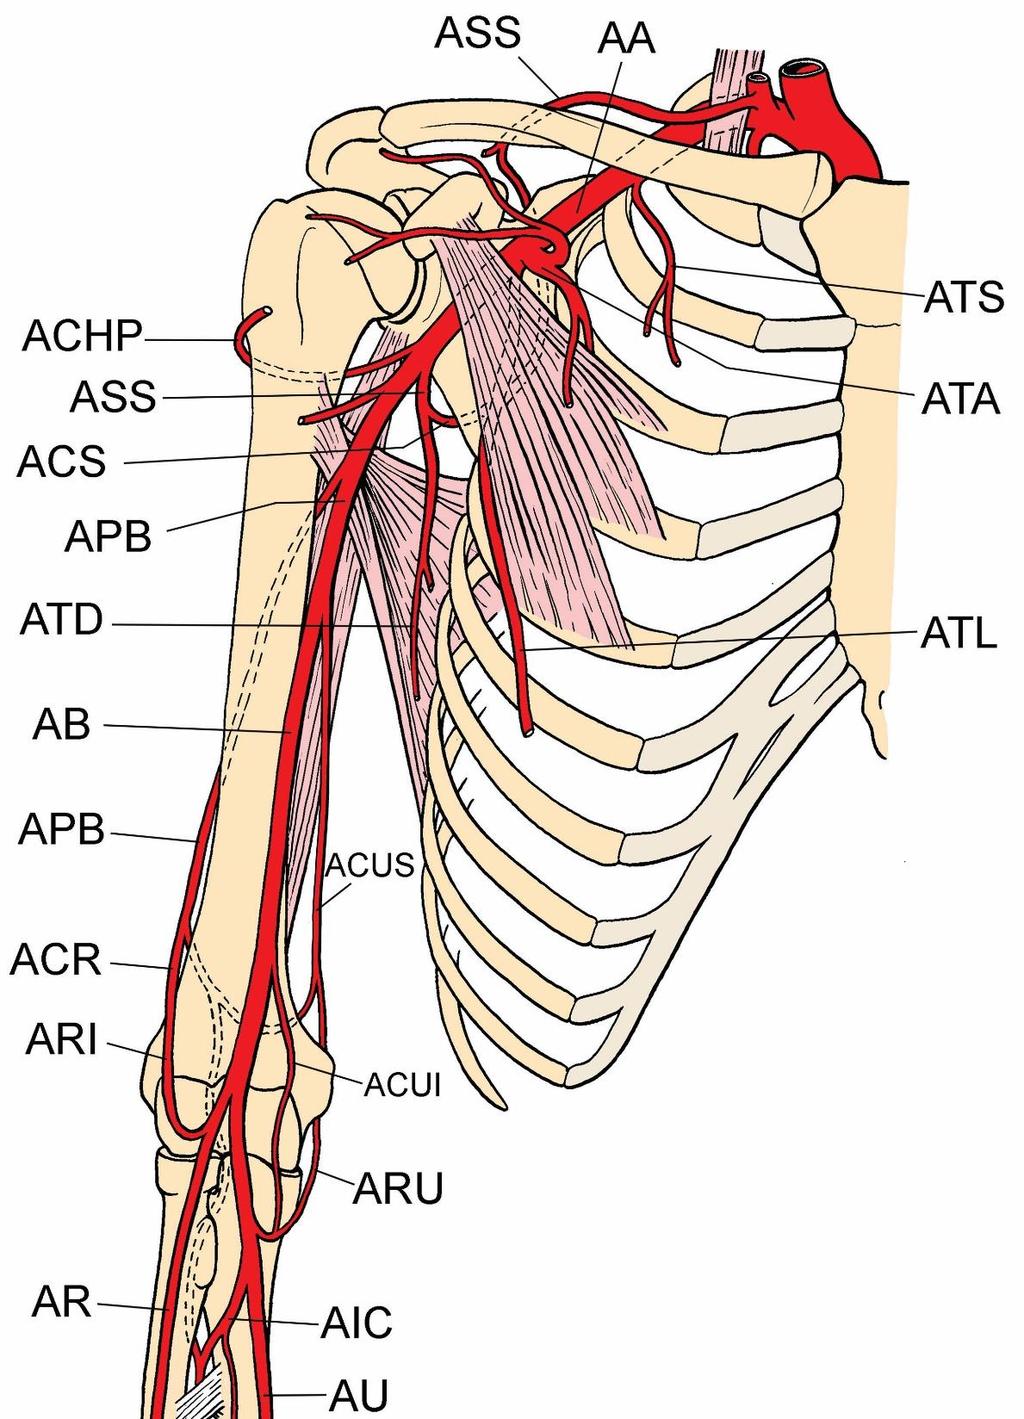 AS -Subclavian artery AA - Axillary artery AB - Brachial artery AR radial